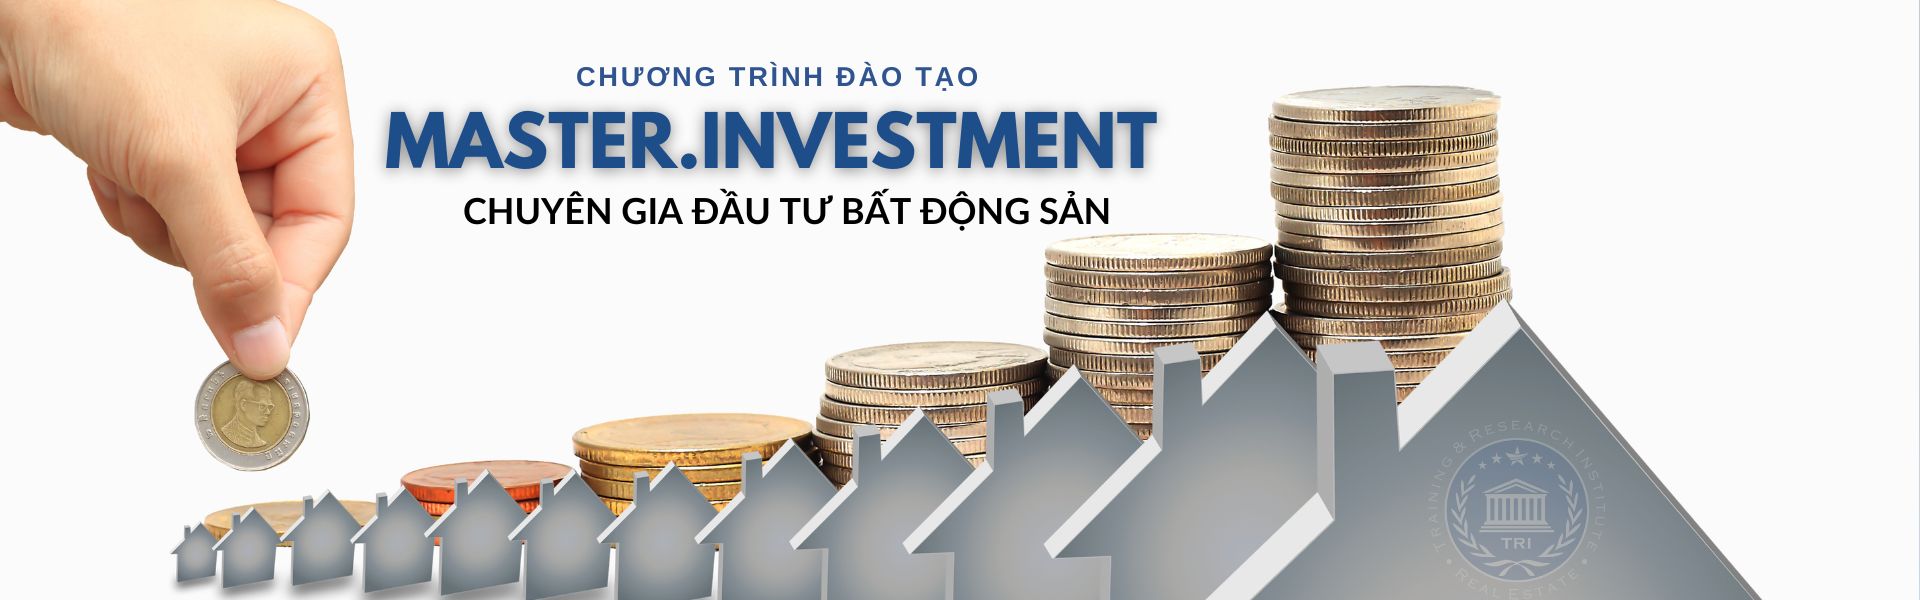 Dau Tu Bat Dong San MASTER.INVESTMENT